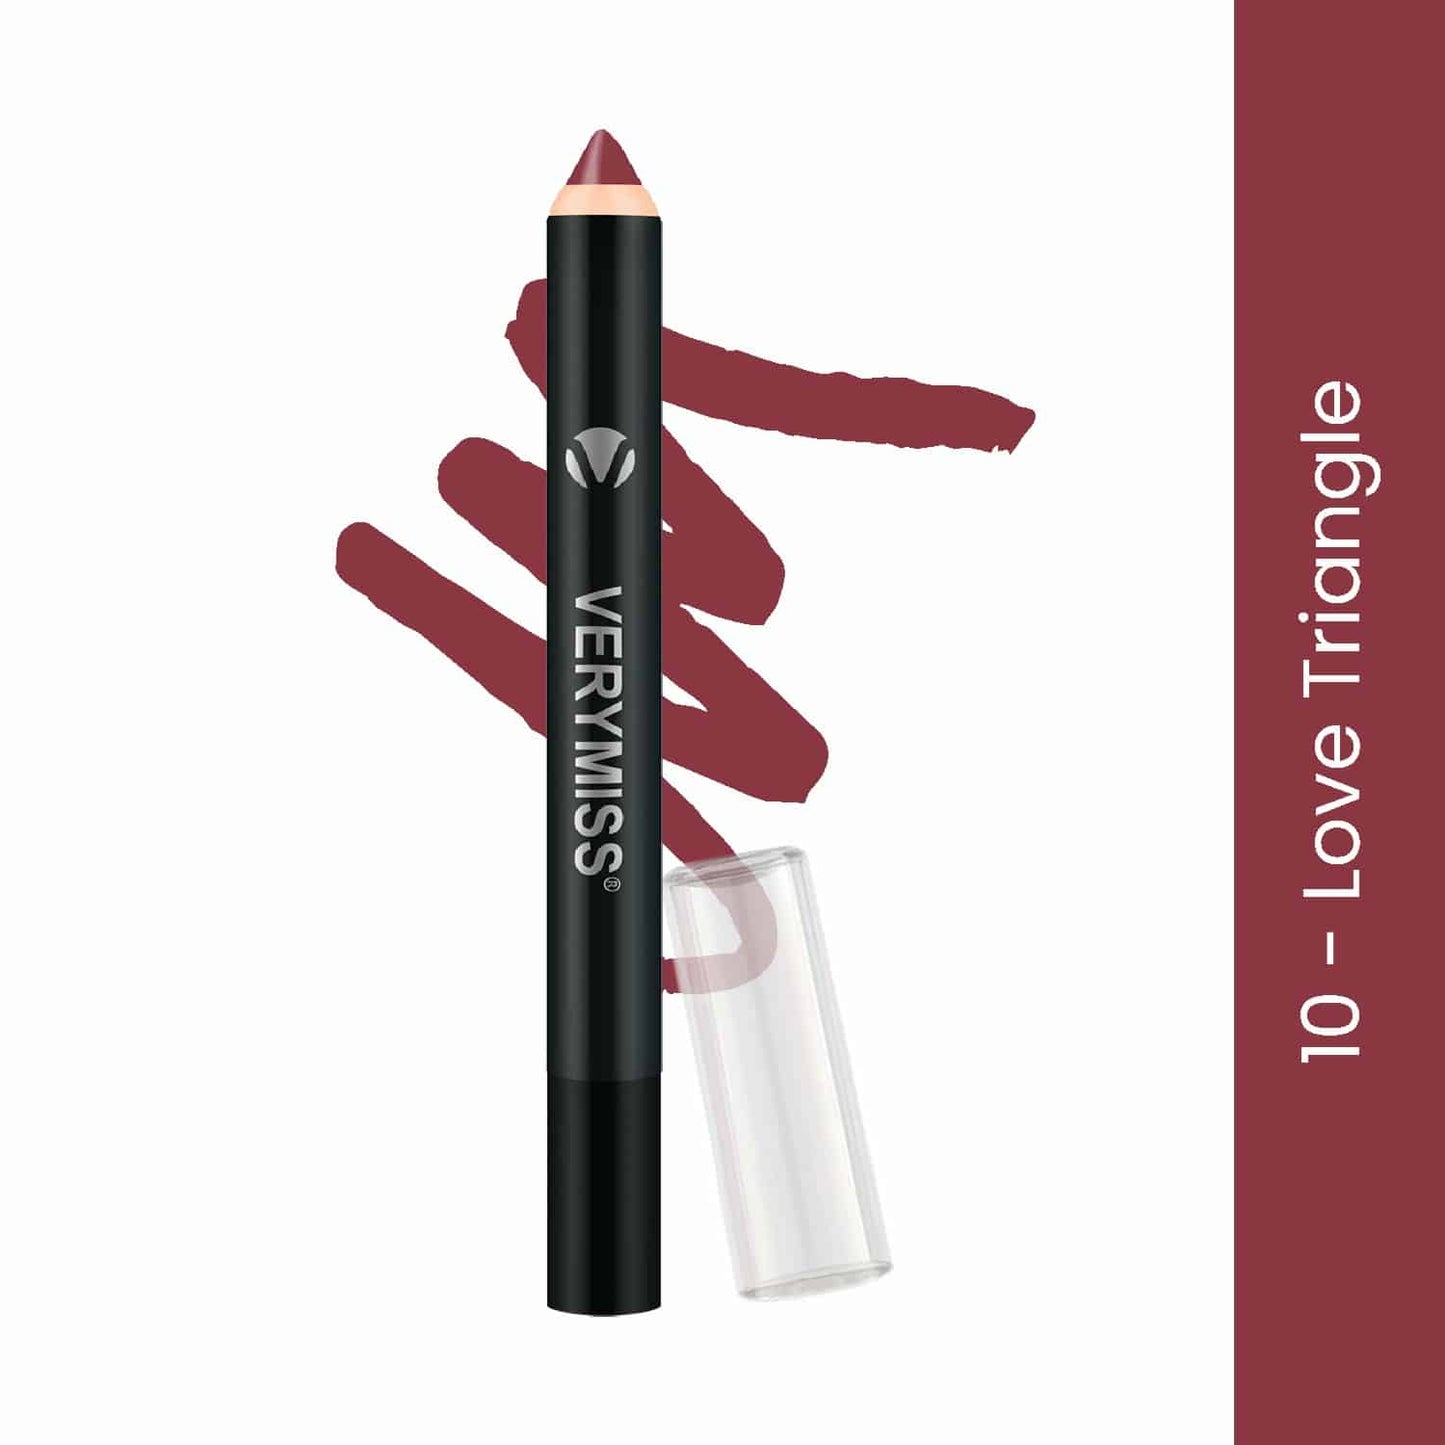 Matte Lip Crayon Lipstick - 10 Love Triangle